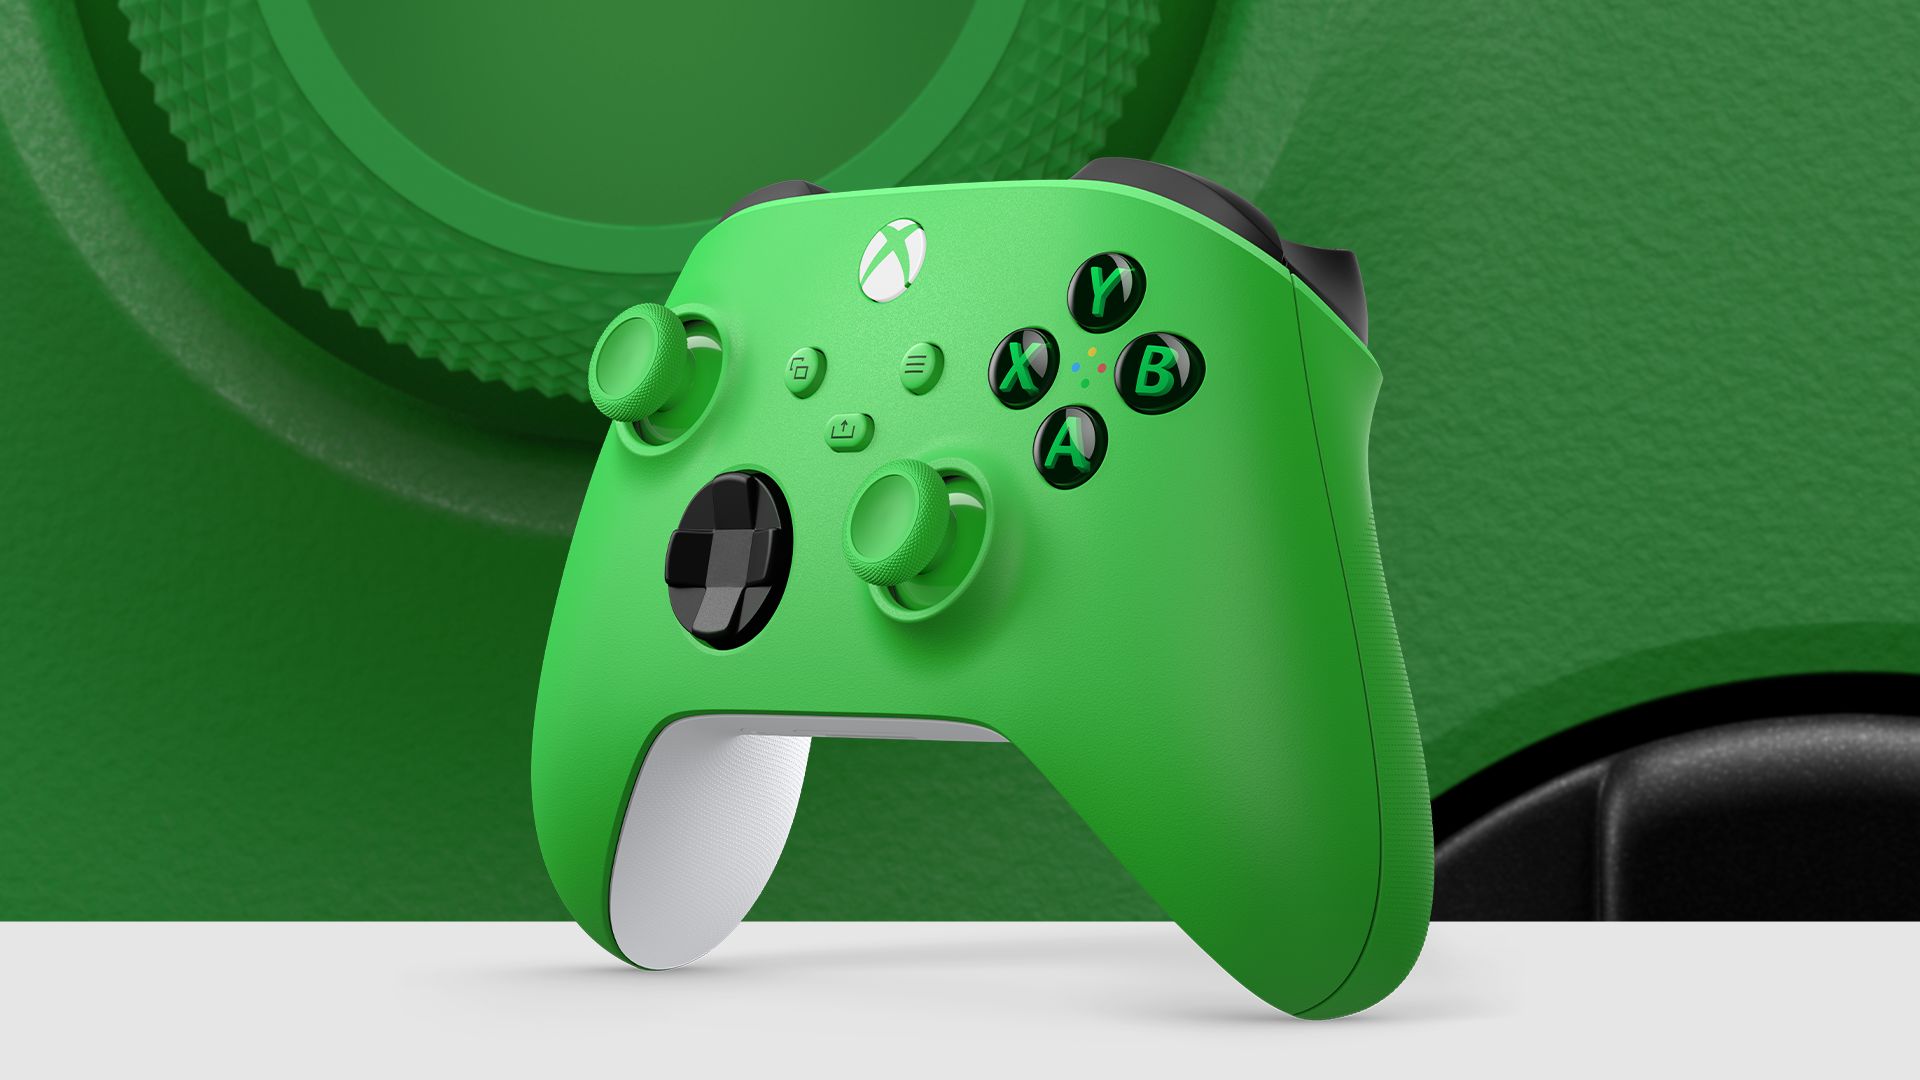 Xboxワイヤレスコントローラーの新色「ベロシティ グリーン」が登場